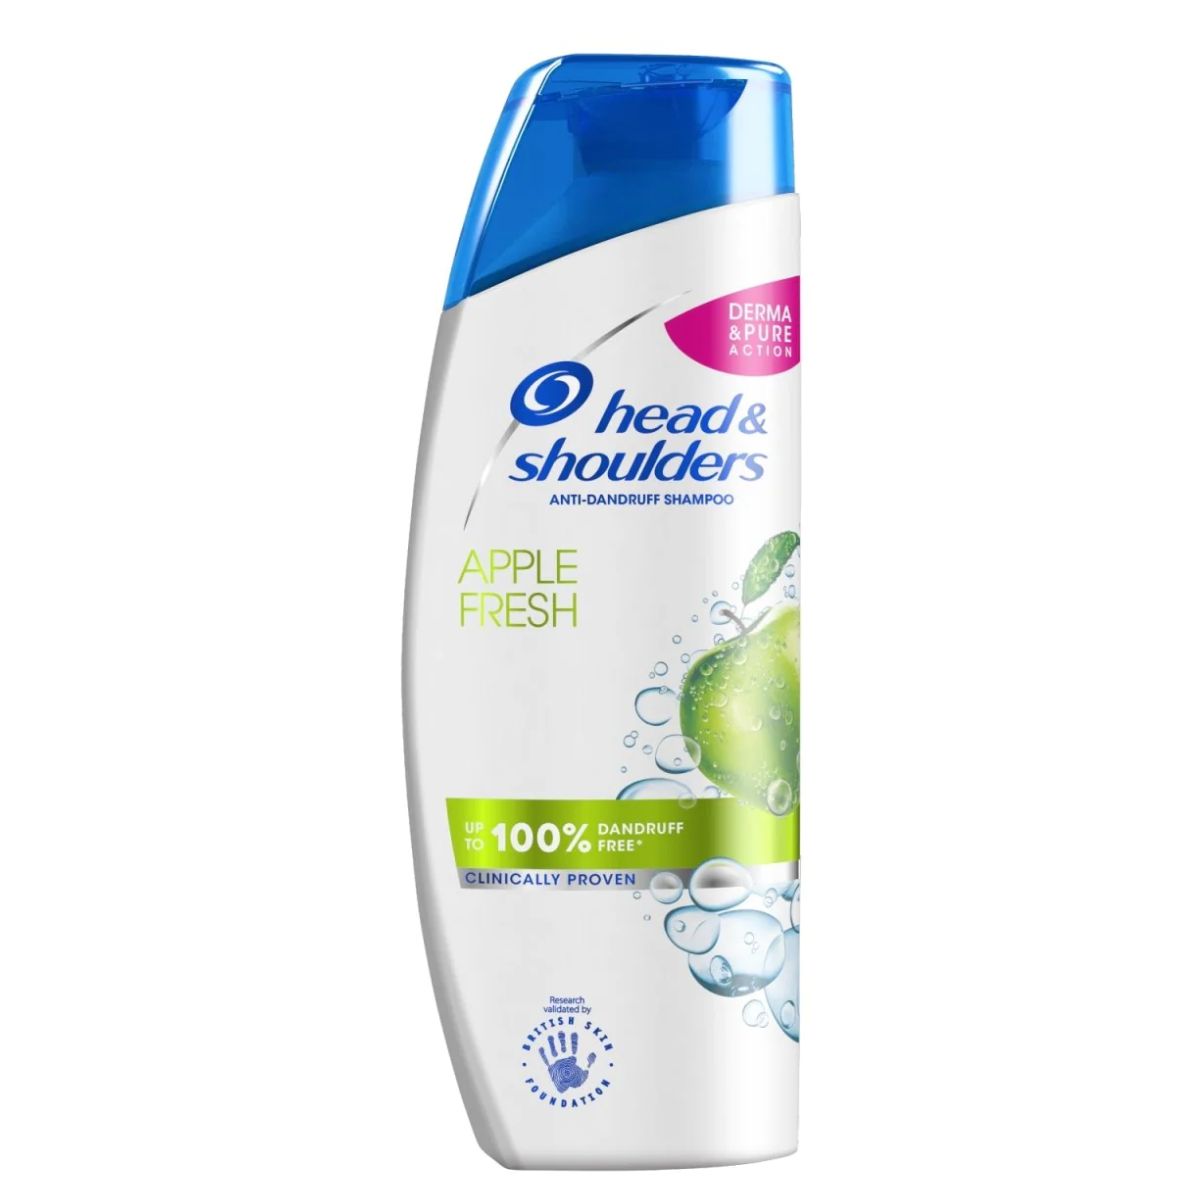 Head & Shoulders - Apple Fresh Shampoo - 250ml body wash.